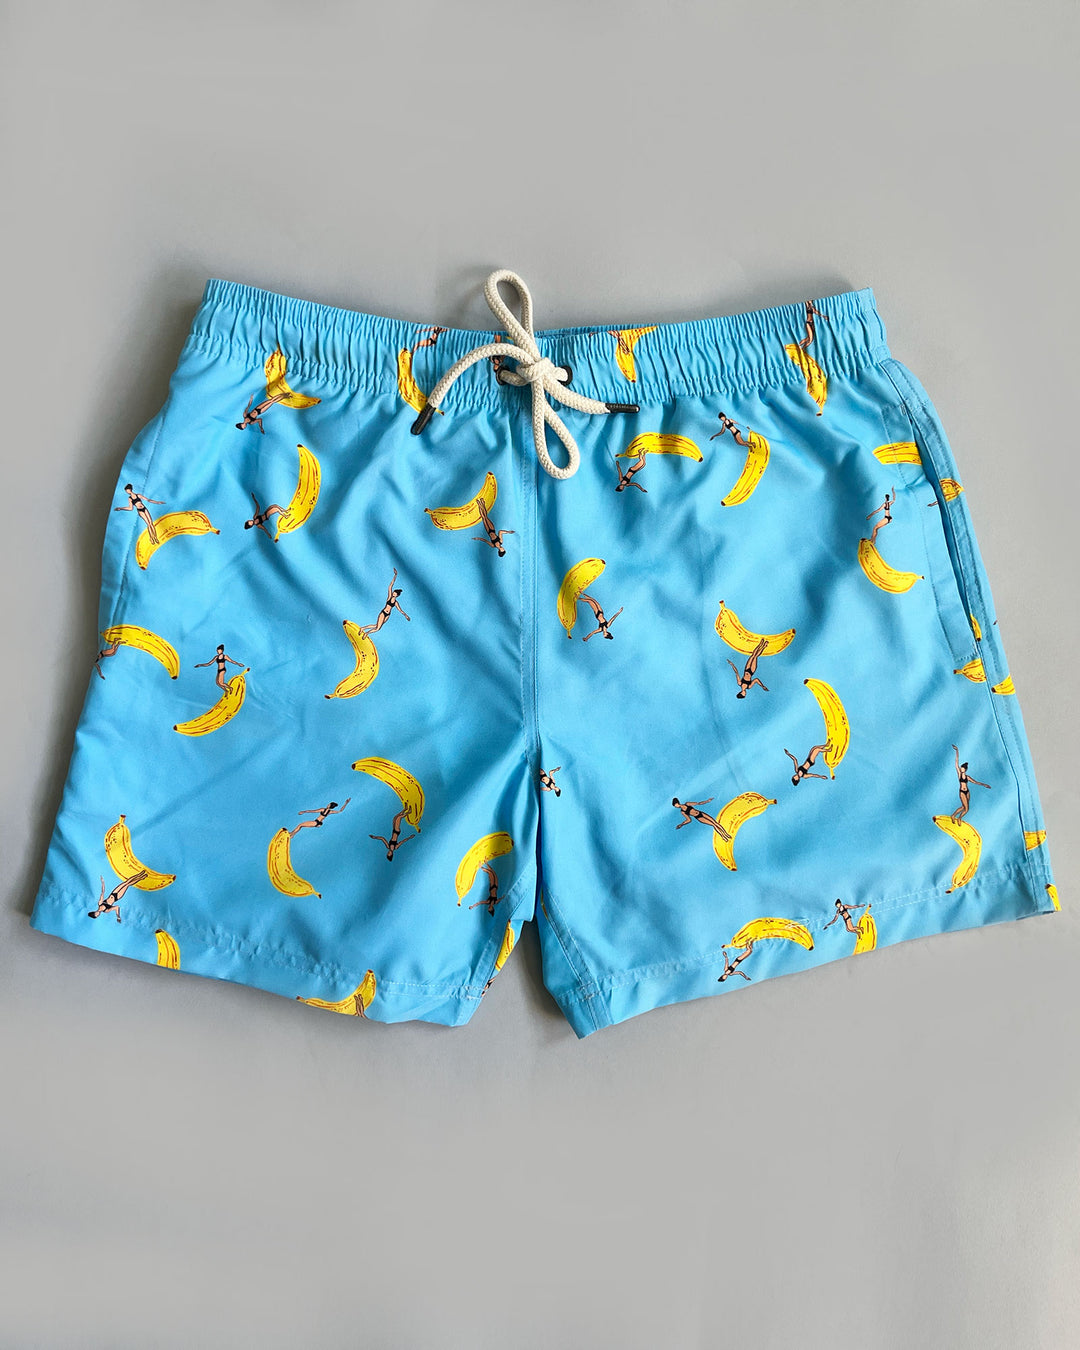 Mens Swim Shorts Banana Boards Flat - Woodstock Laundry